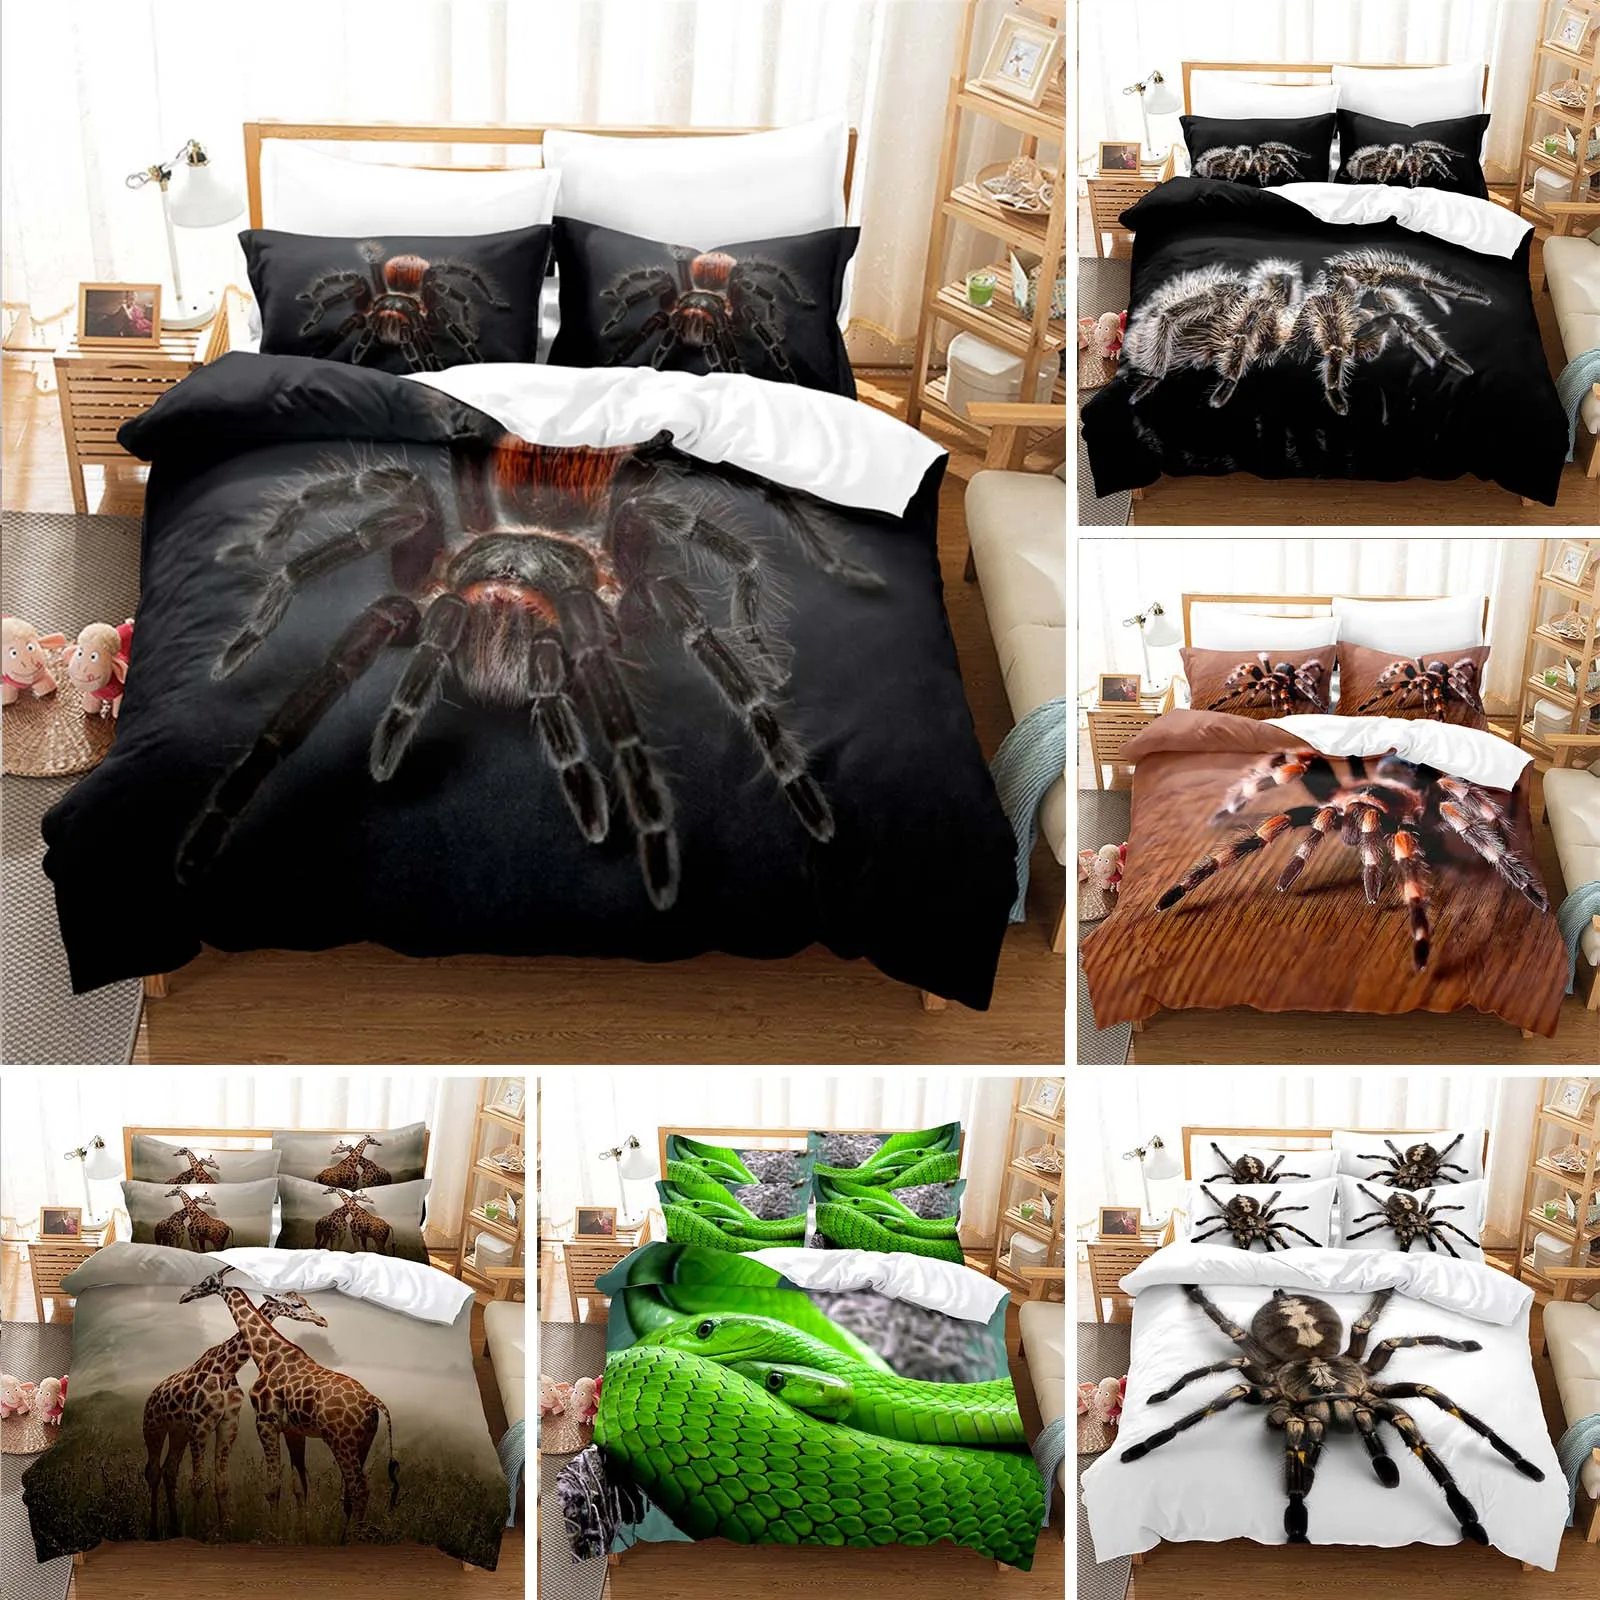 

Комплект постельного белья из микрофибры с 3D-принтом пауков и животных